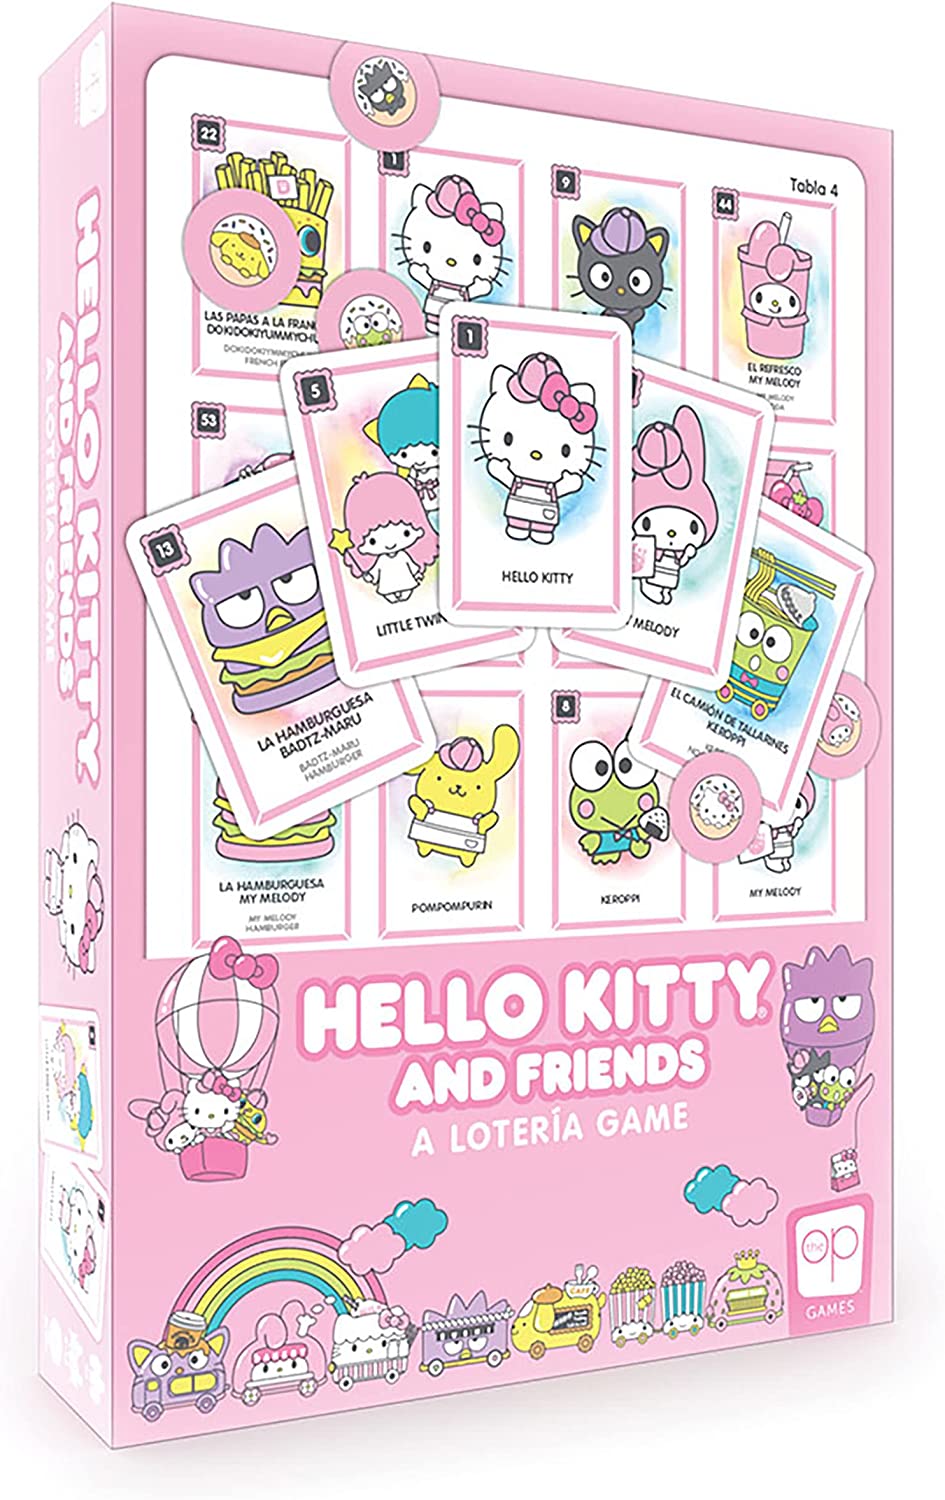 Hello Kitty® and Friends Loteria|Traditionelles Loteria Mexicana-Glücksspiel|Spiel im Bingo-Stil mit individueller Grafik und Illustrationen von Hello Kitty|Inspiriert von spanischen Wörtern und mexikanischer Kultur